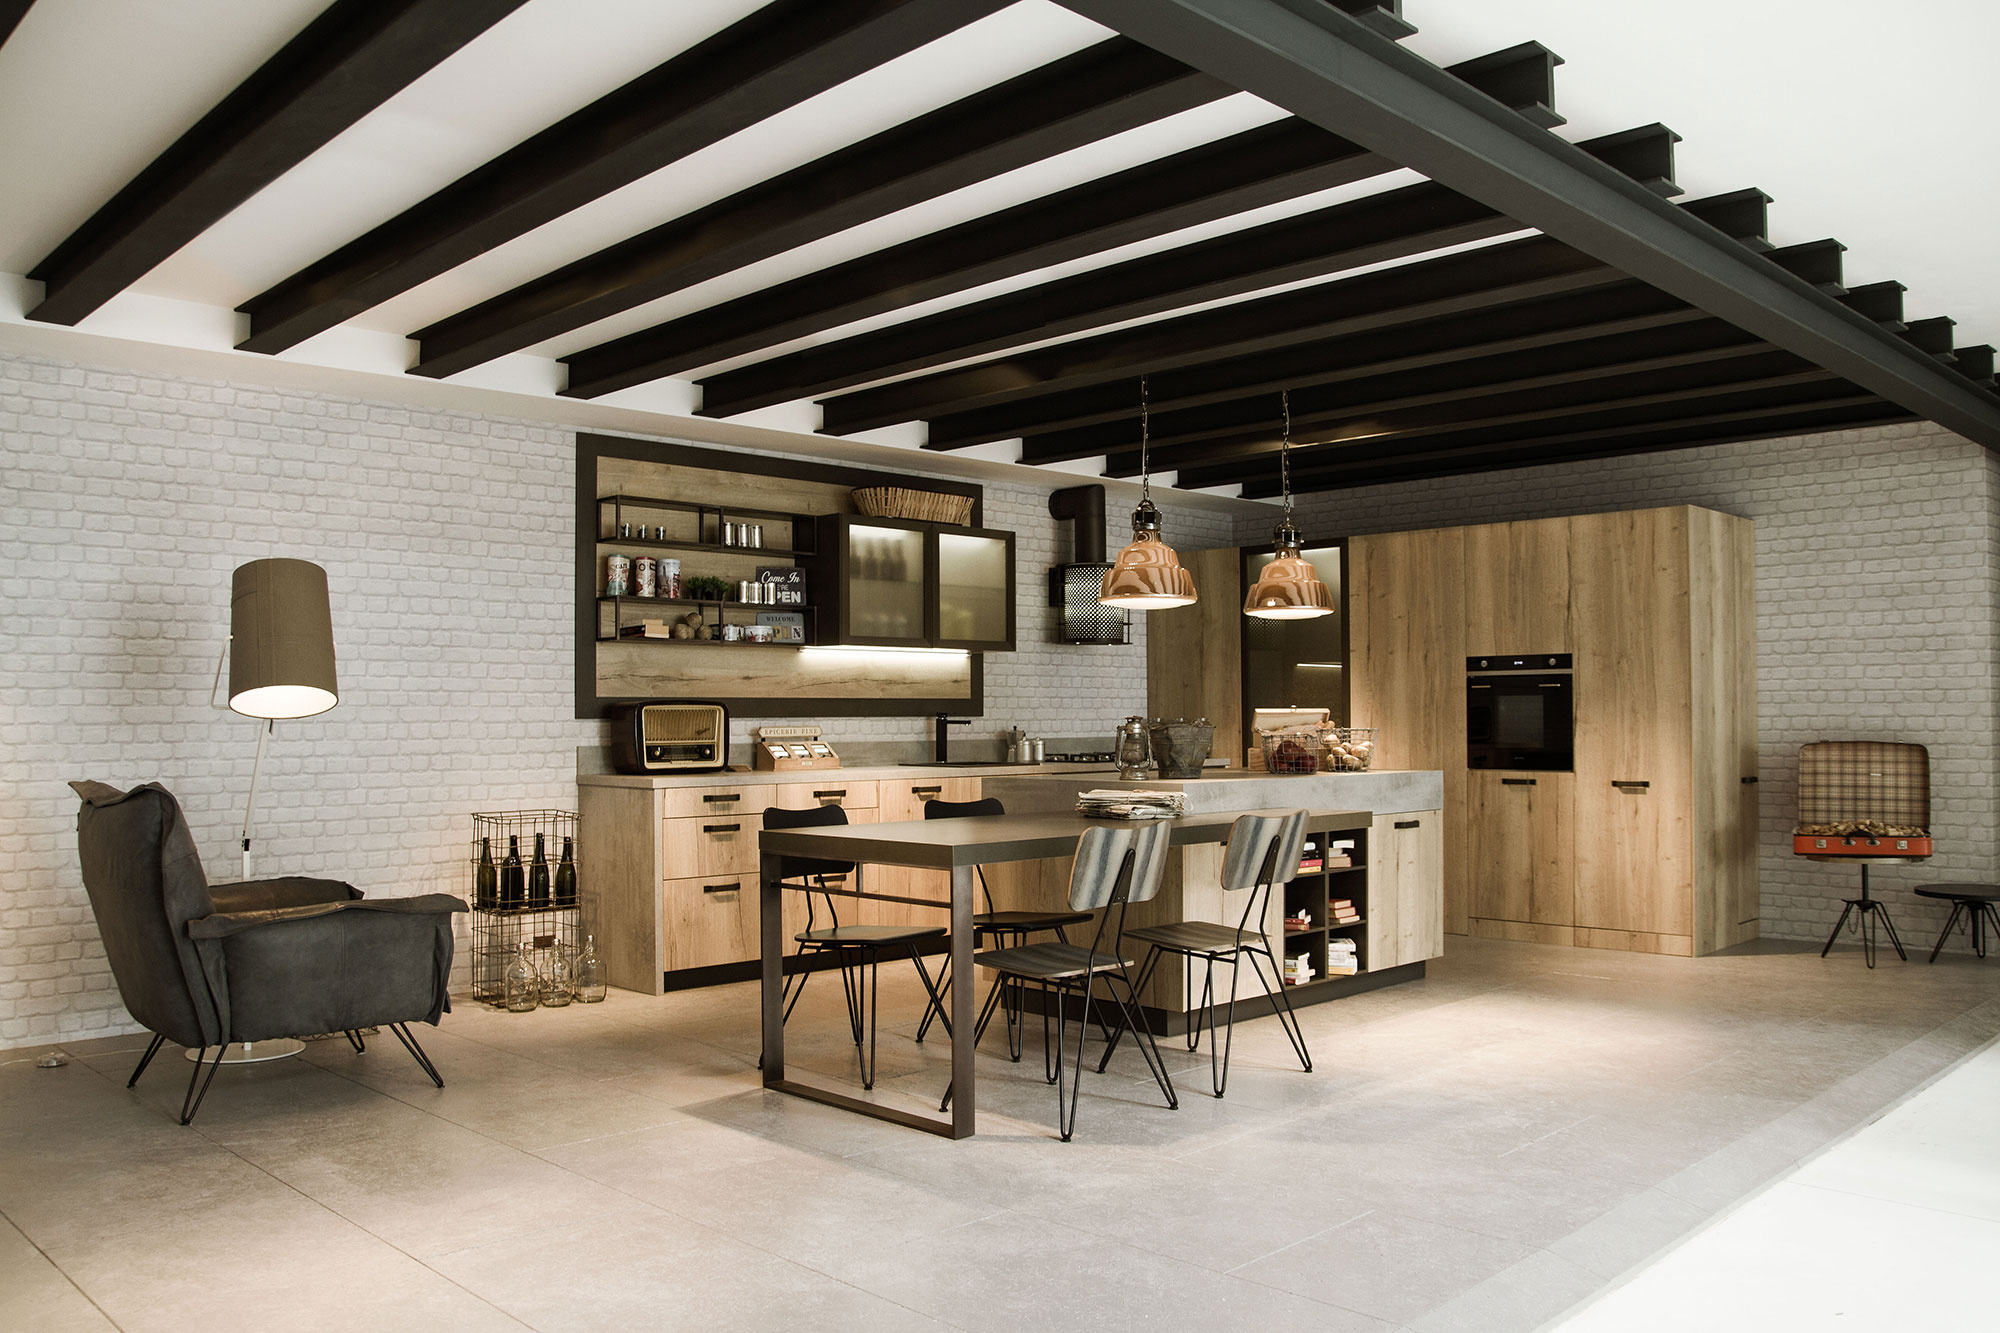 Дизайн кухни в производственном стиле с железными балками на потолке